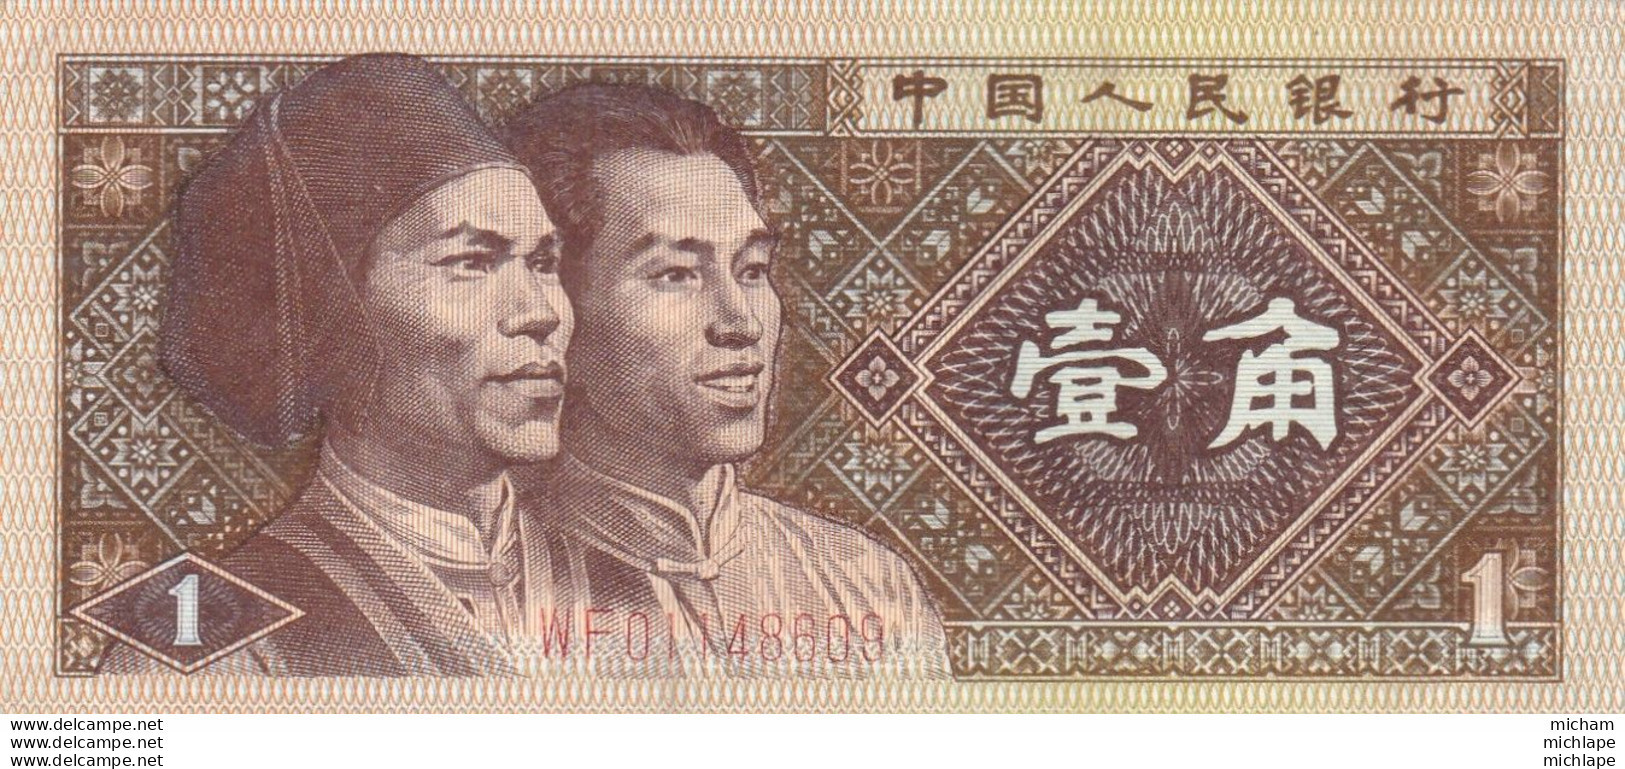 1 Yuan Yi Wu Zhongguo Renmin Yinhang Chine  1980 - Cina